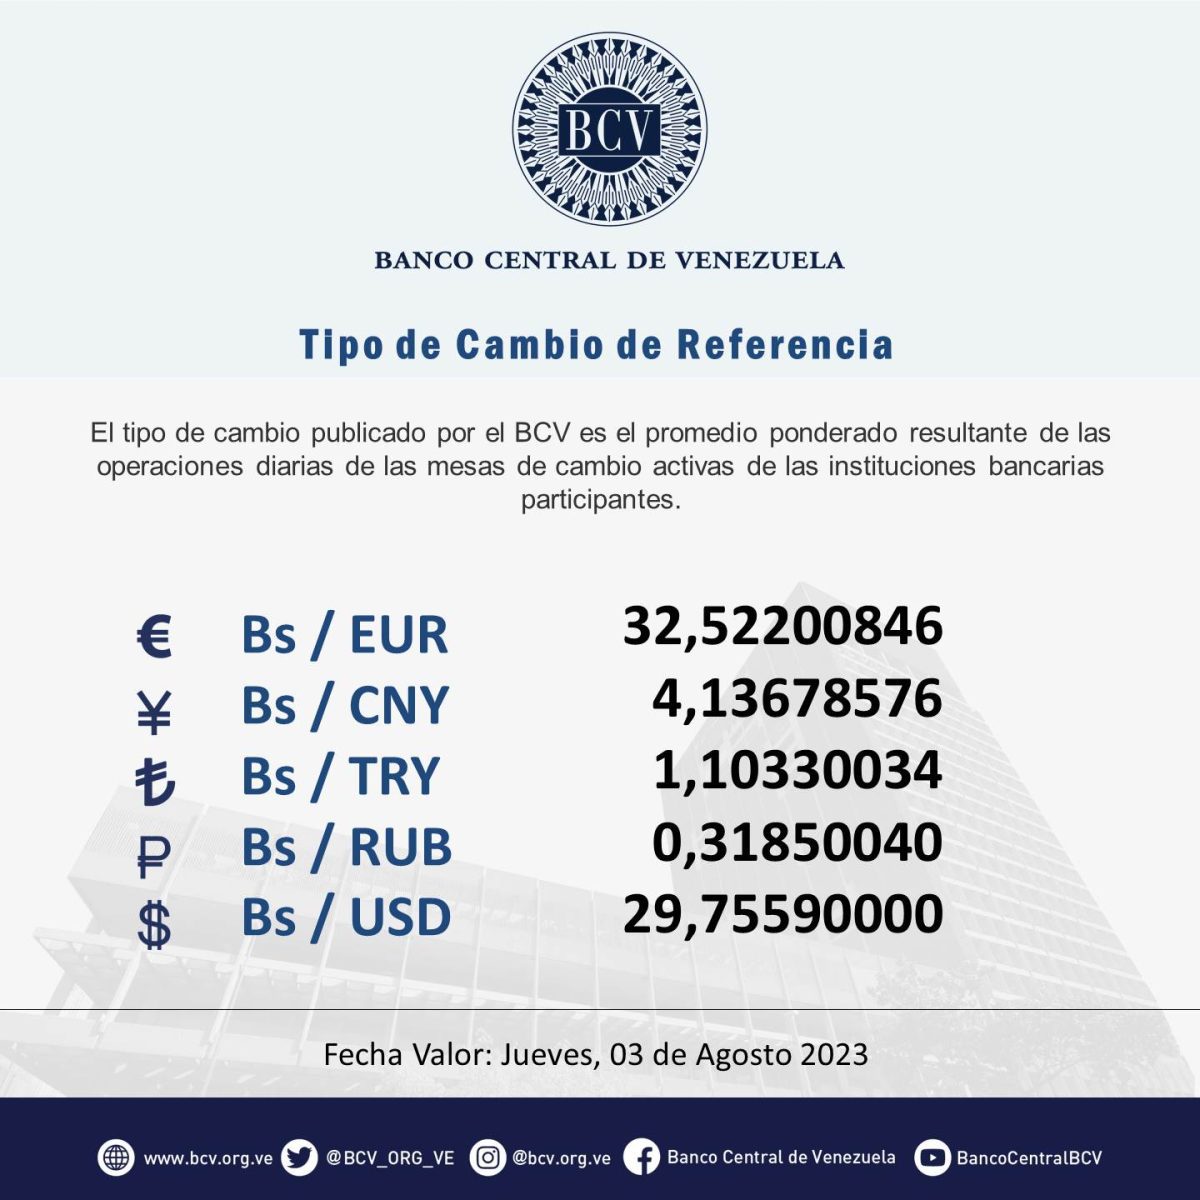 dolartoday en venezuela precio del dolar este jueves 2 de agosto de 2023 laverdaddemonagas.com bcv543